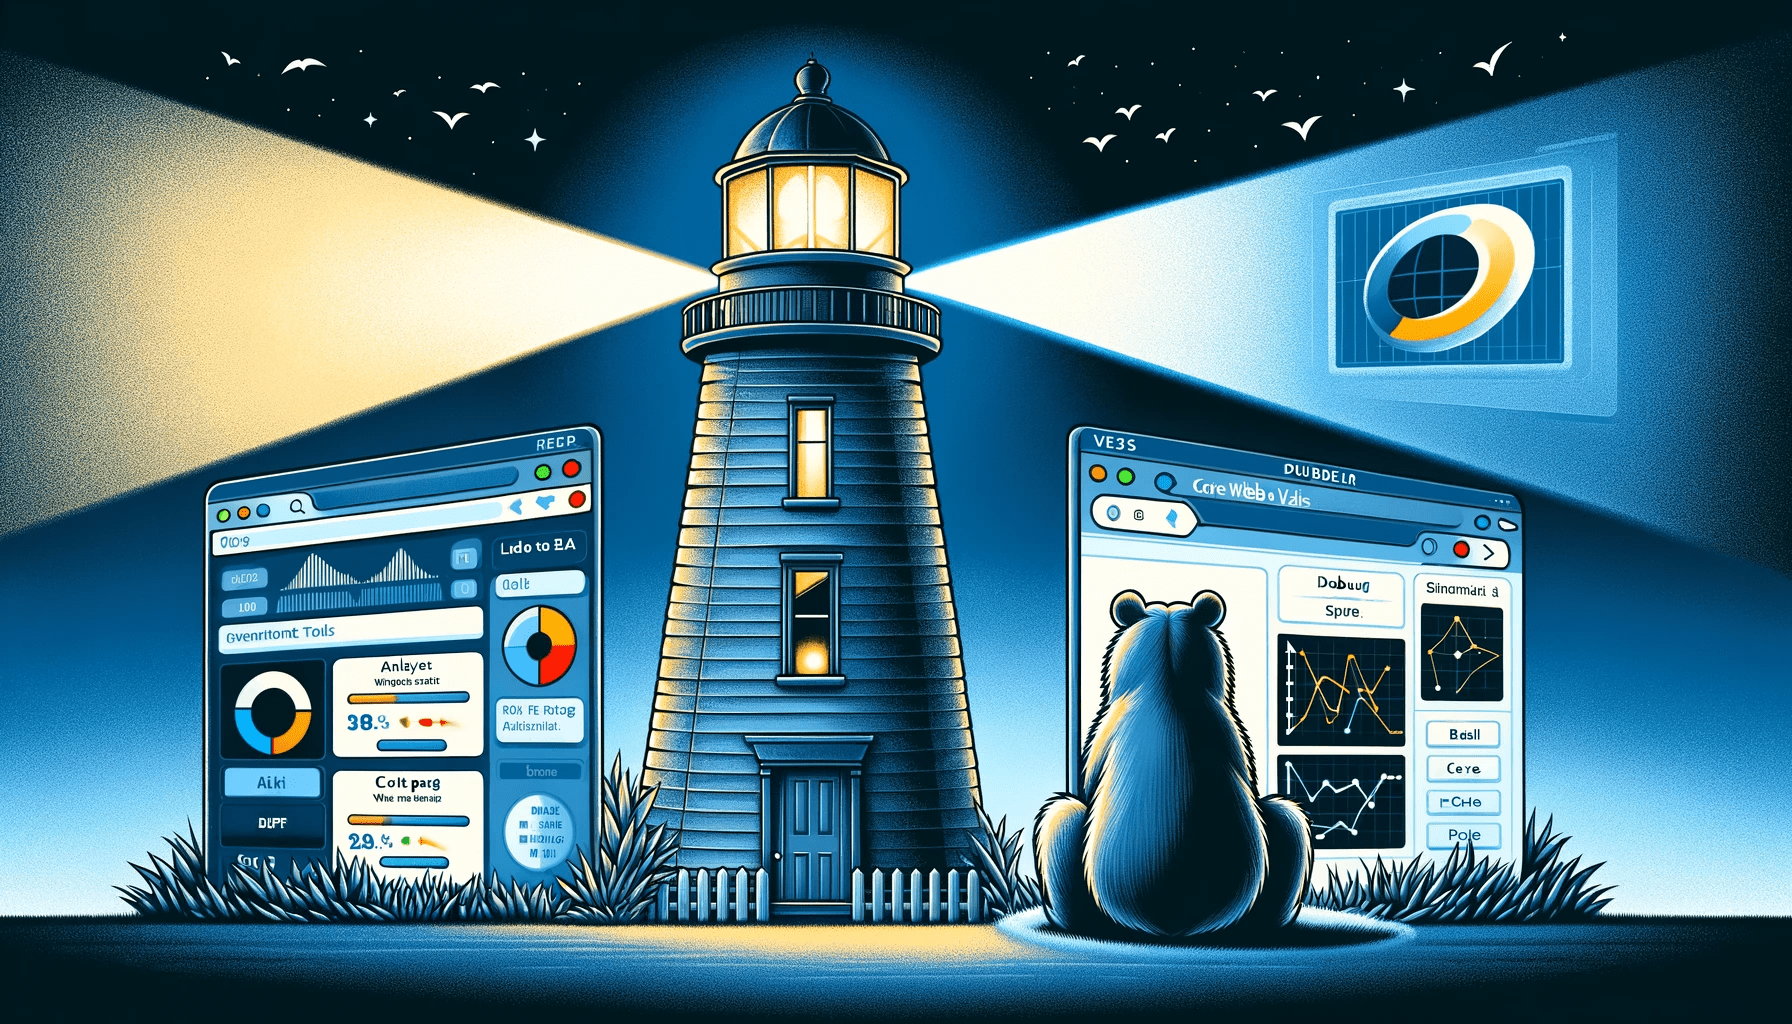 כלים לבחינת ביצועי אתר האינטרנט Lighthouse לעומת DebugBear 